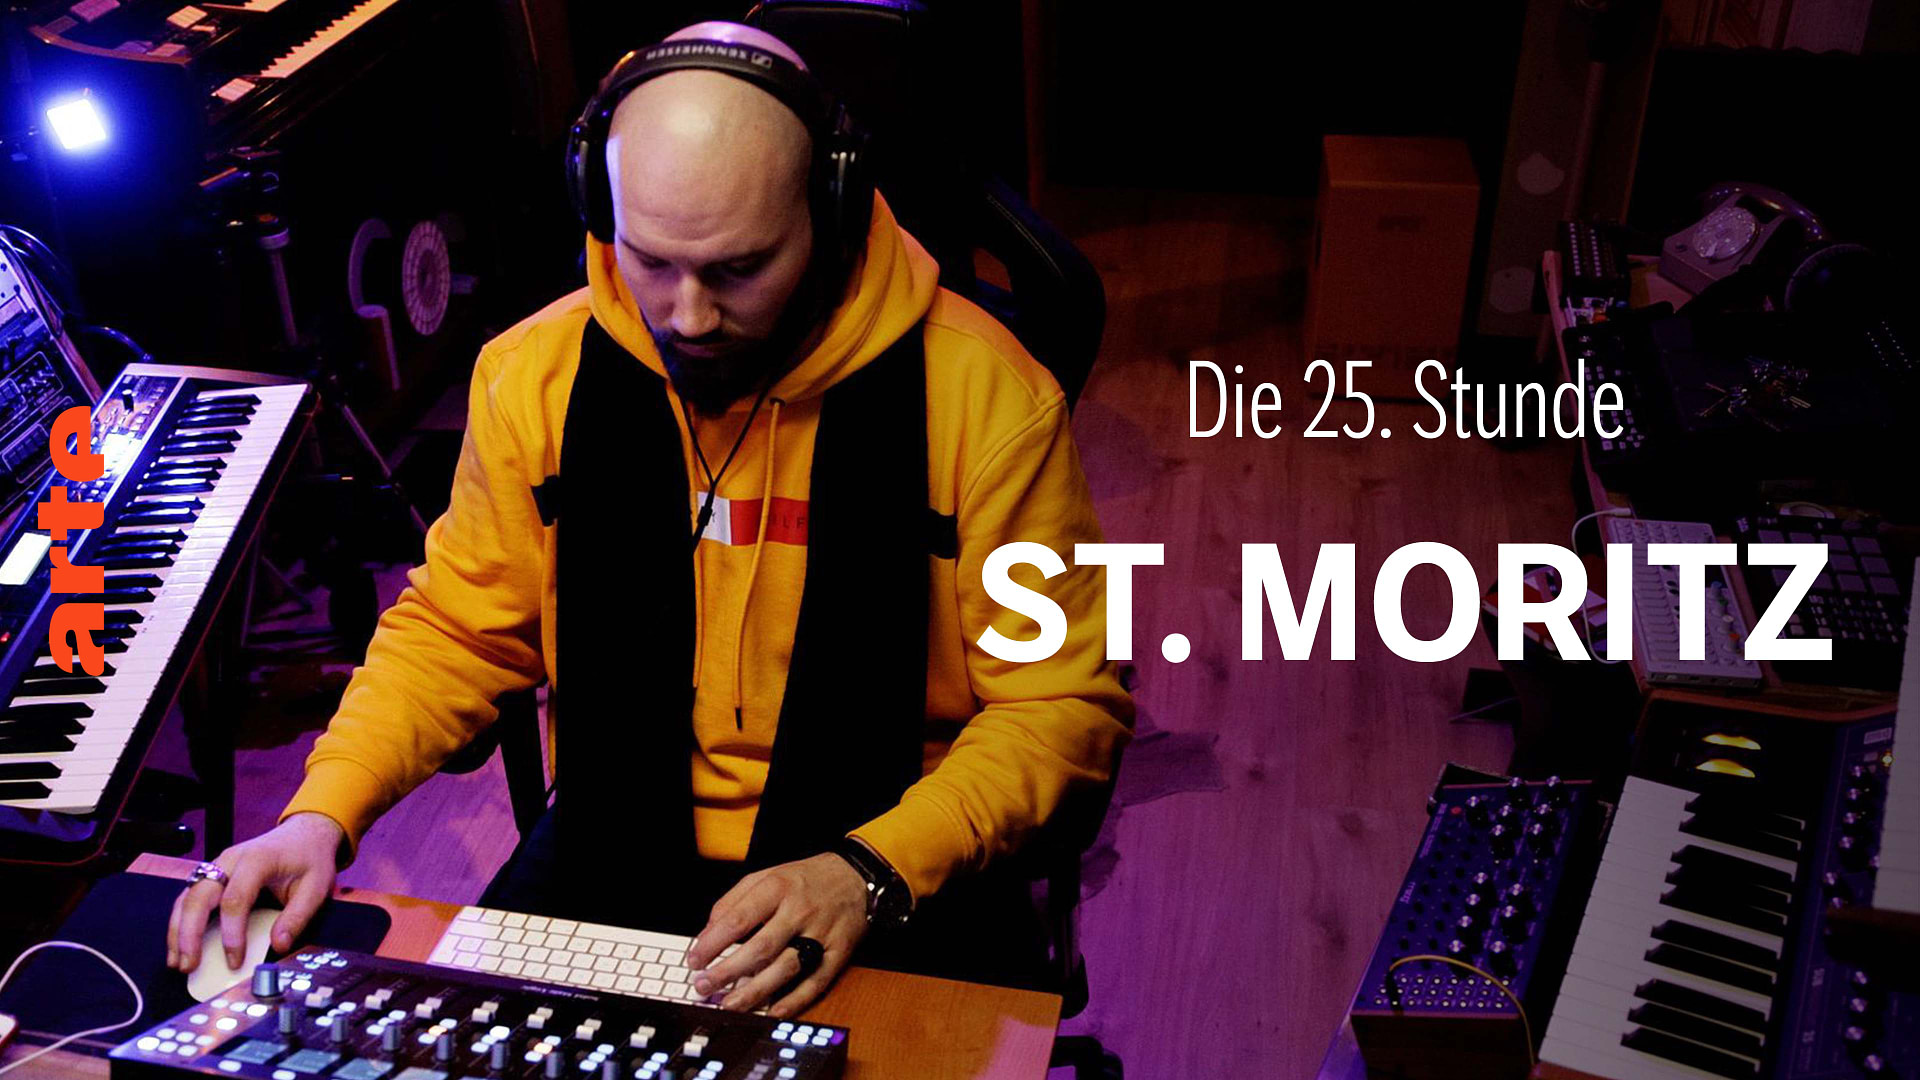 Die 25. Stunde - St. Moritz